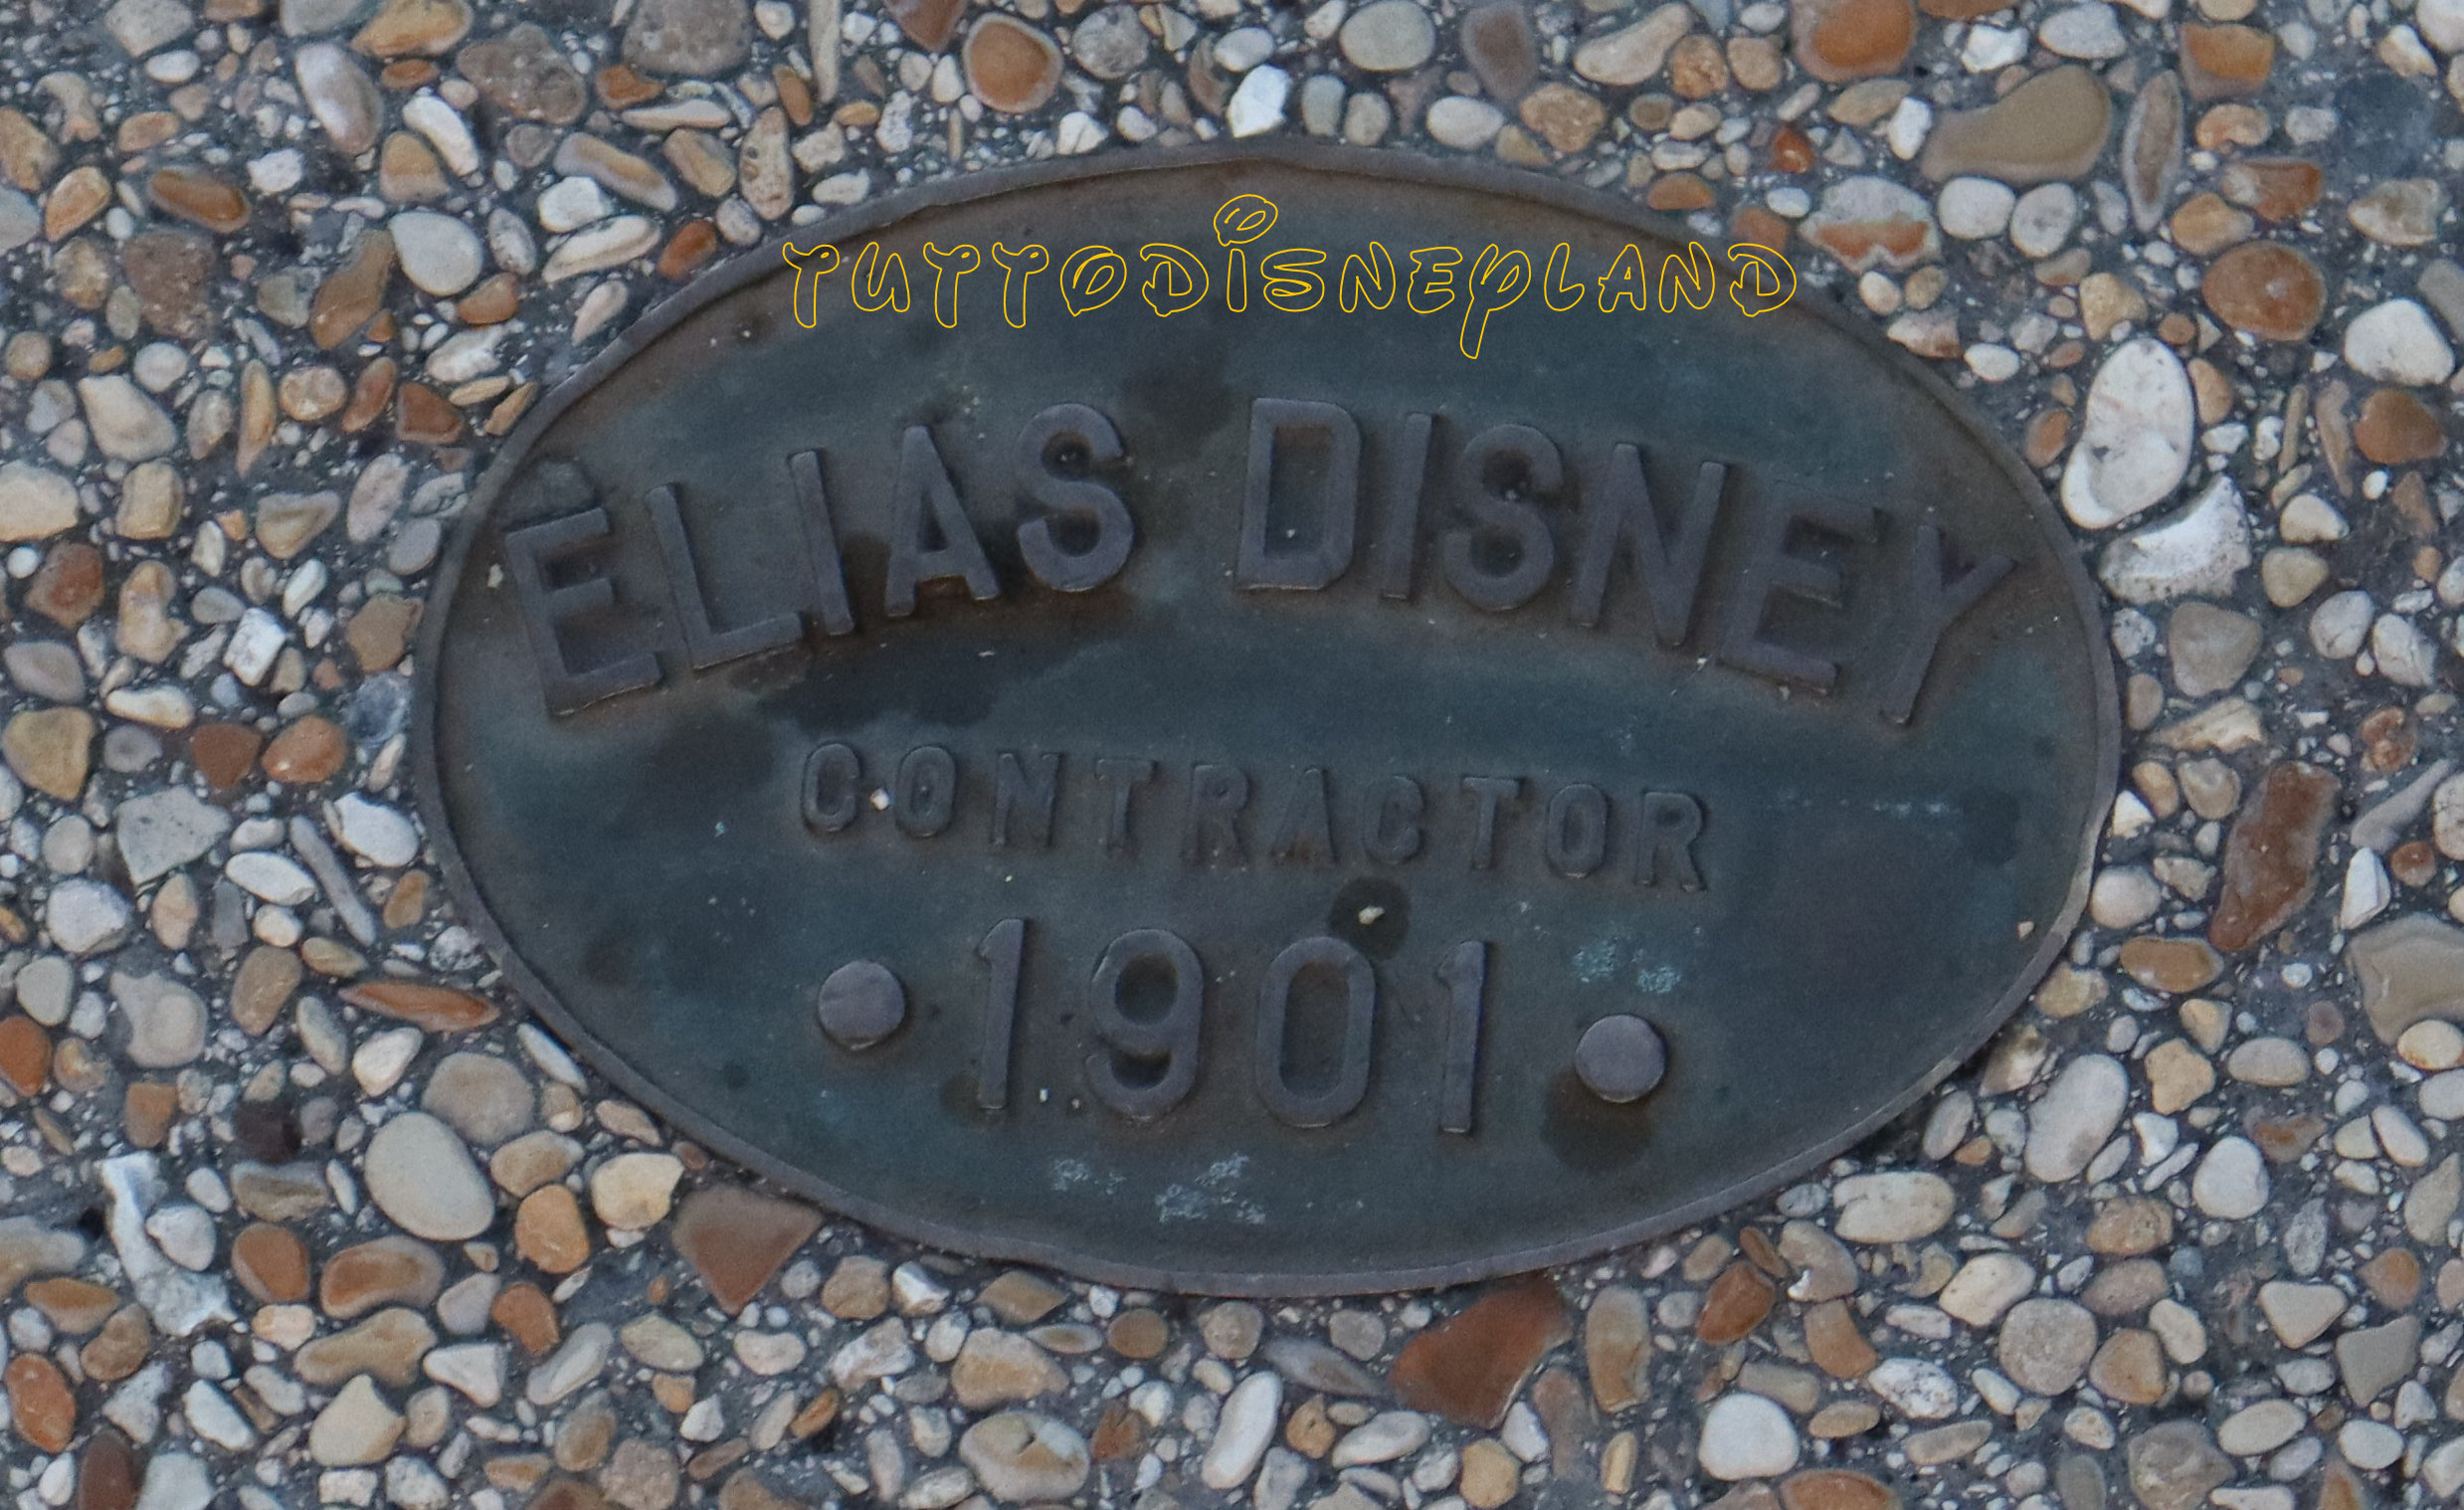 Elias Disney – Contractor 1901 - Main Street Motors